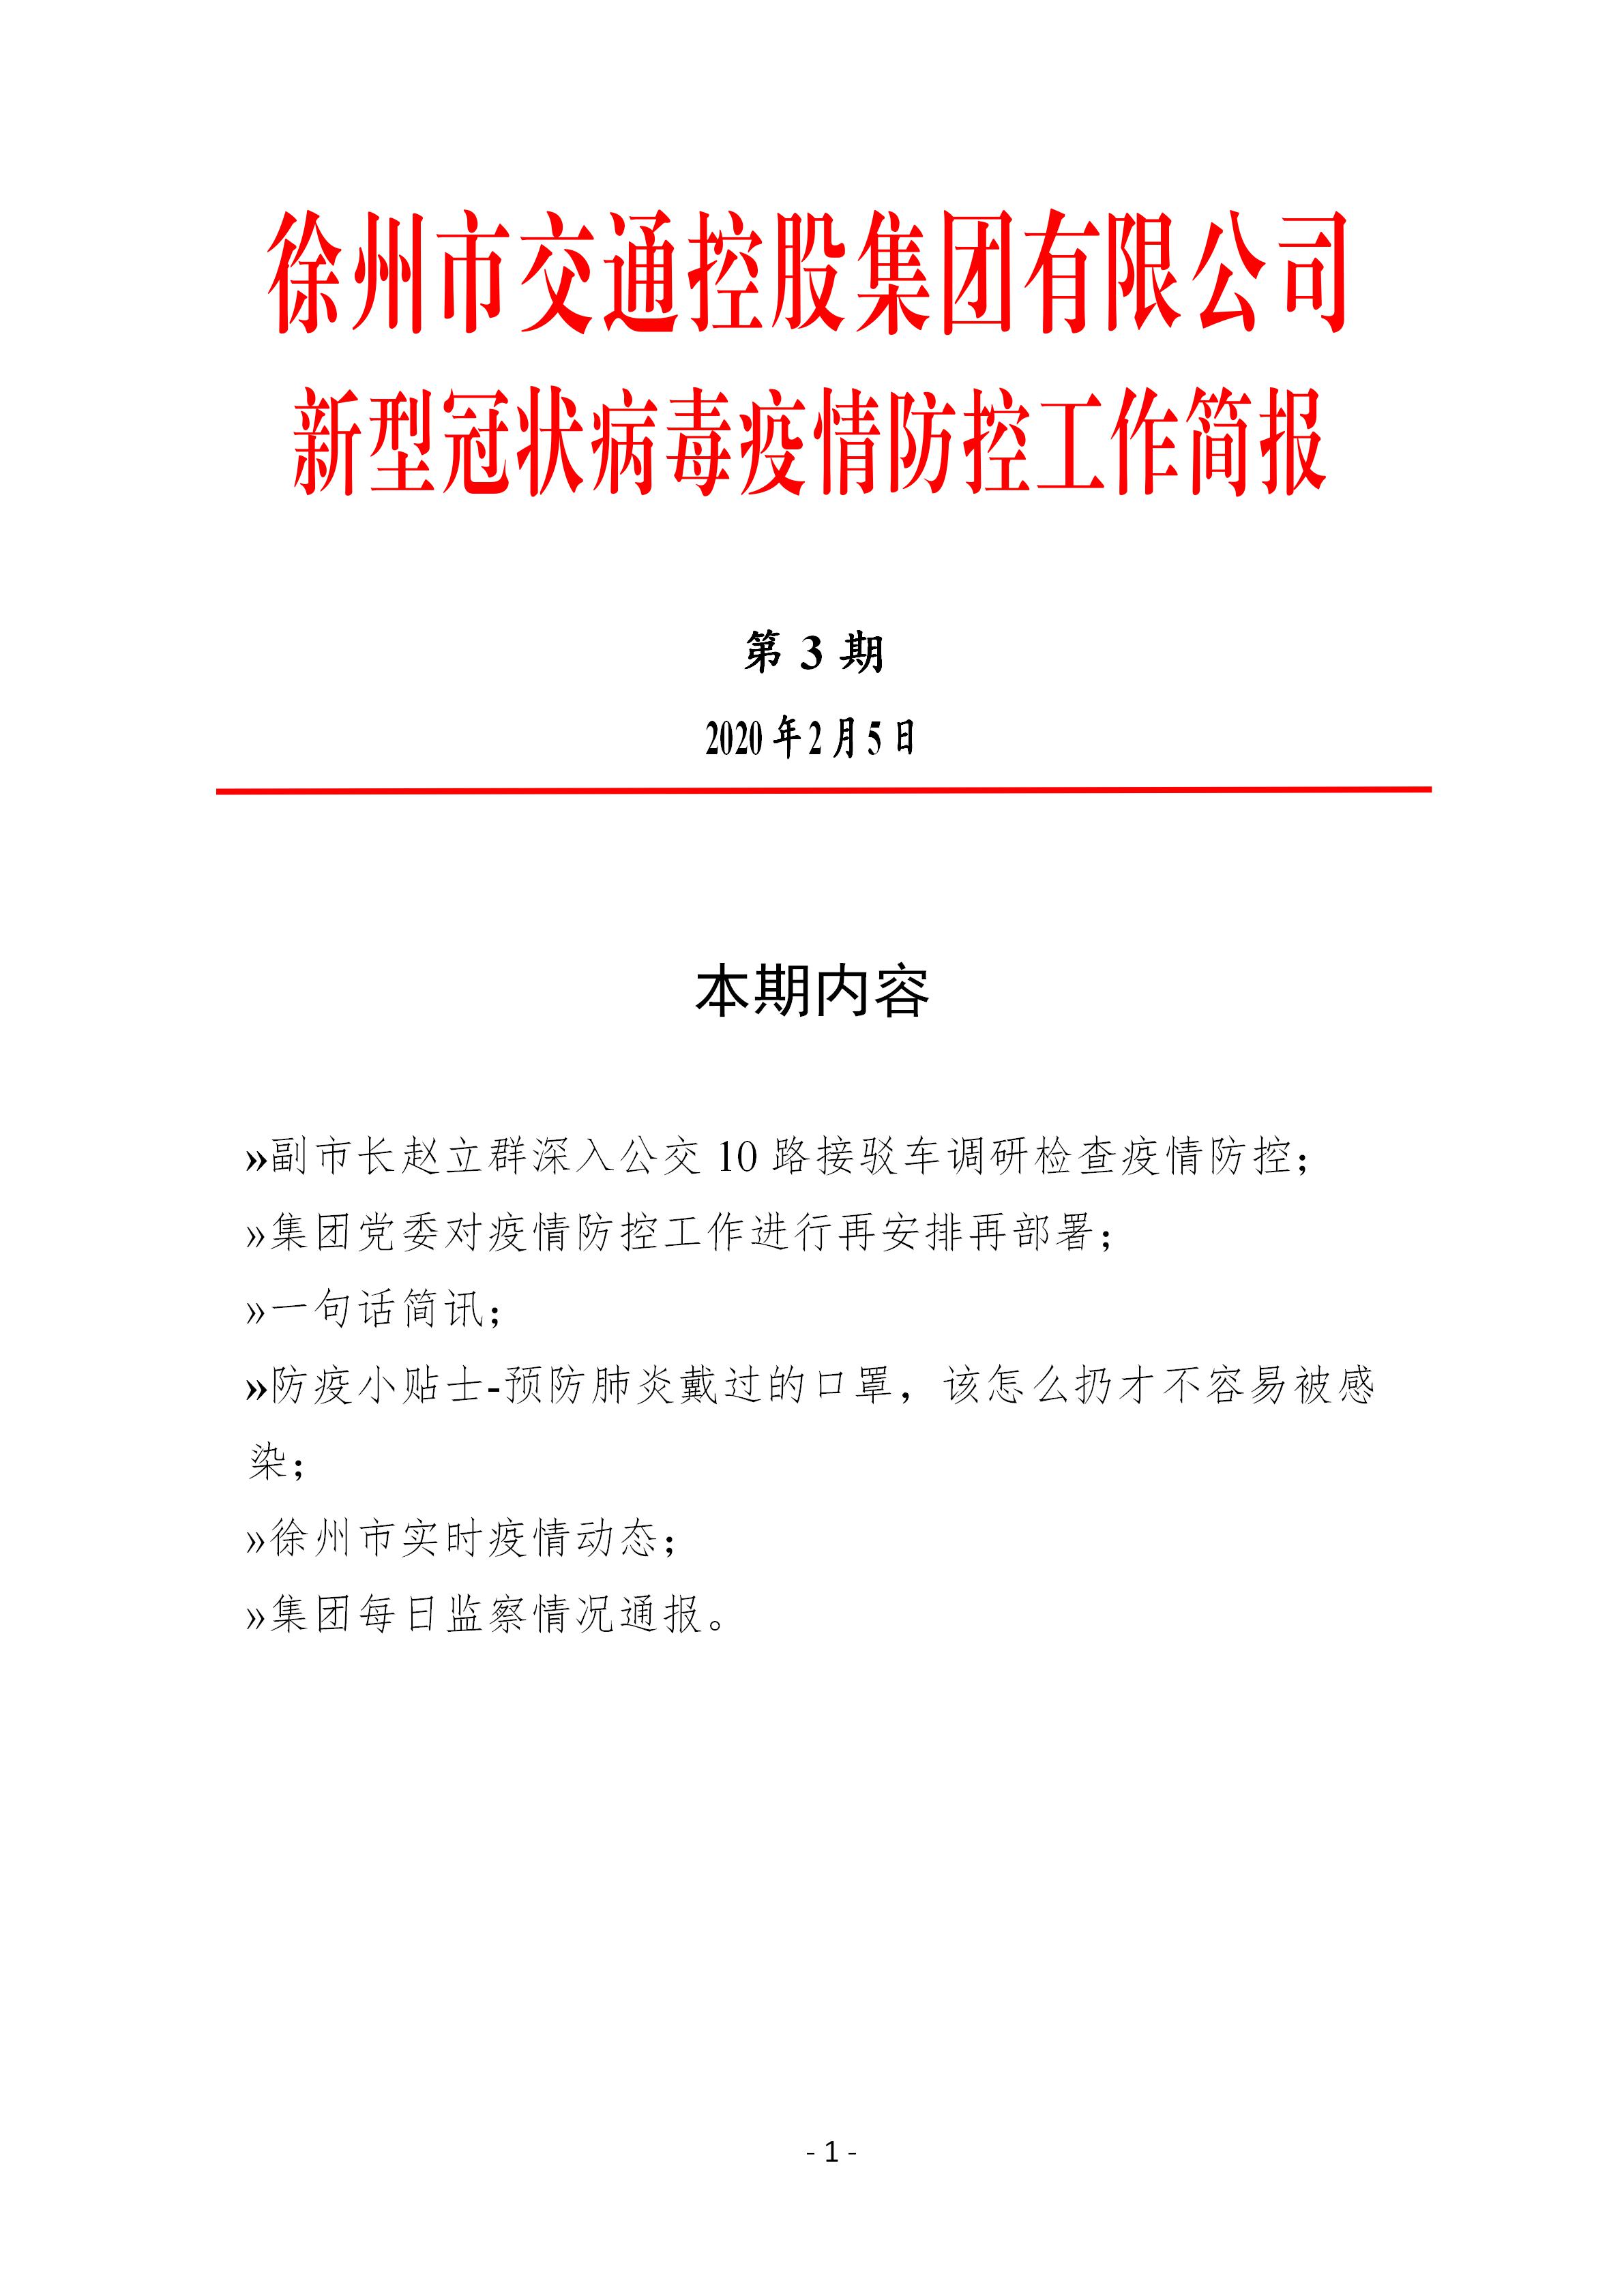 （第三期2.5）徐州市交通控股集团新型冠状病毒防疫防控工作简报